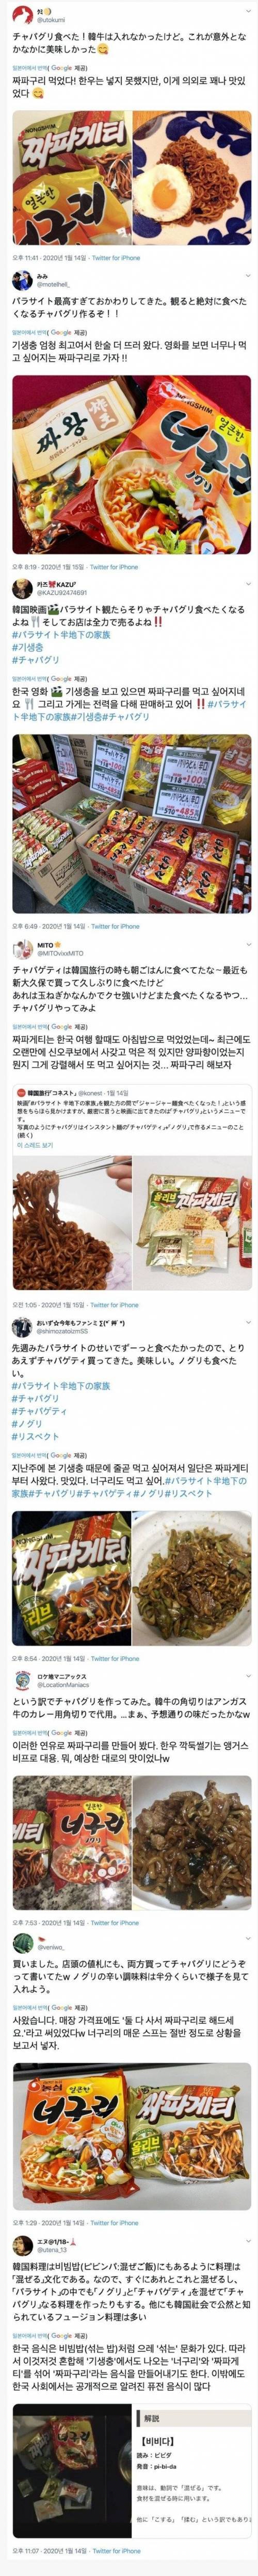 [스압] 일본 트위터에서 퍼지고 있는 한국음식.jpg